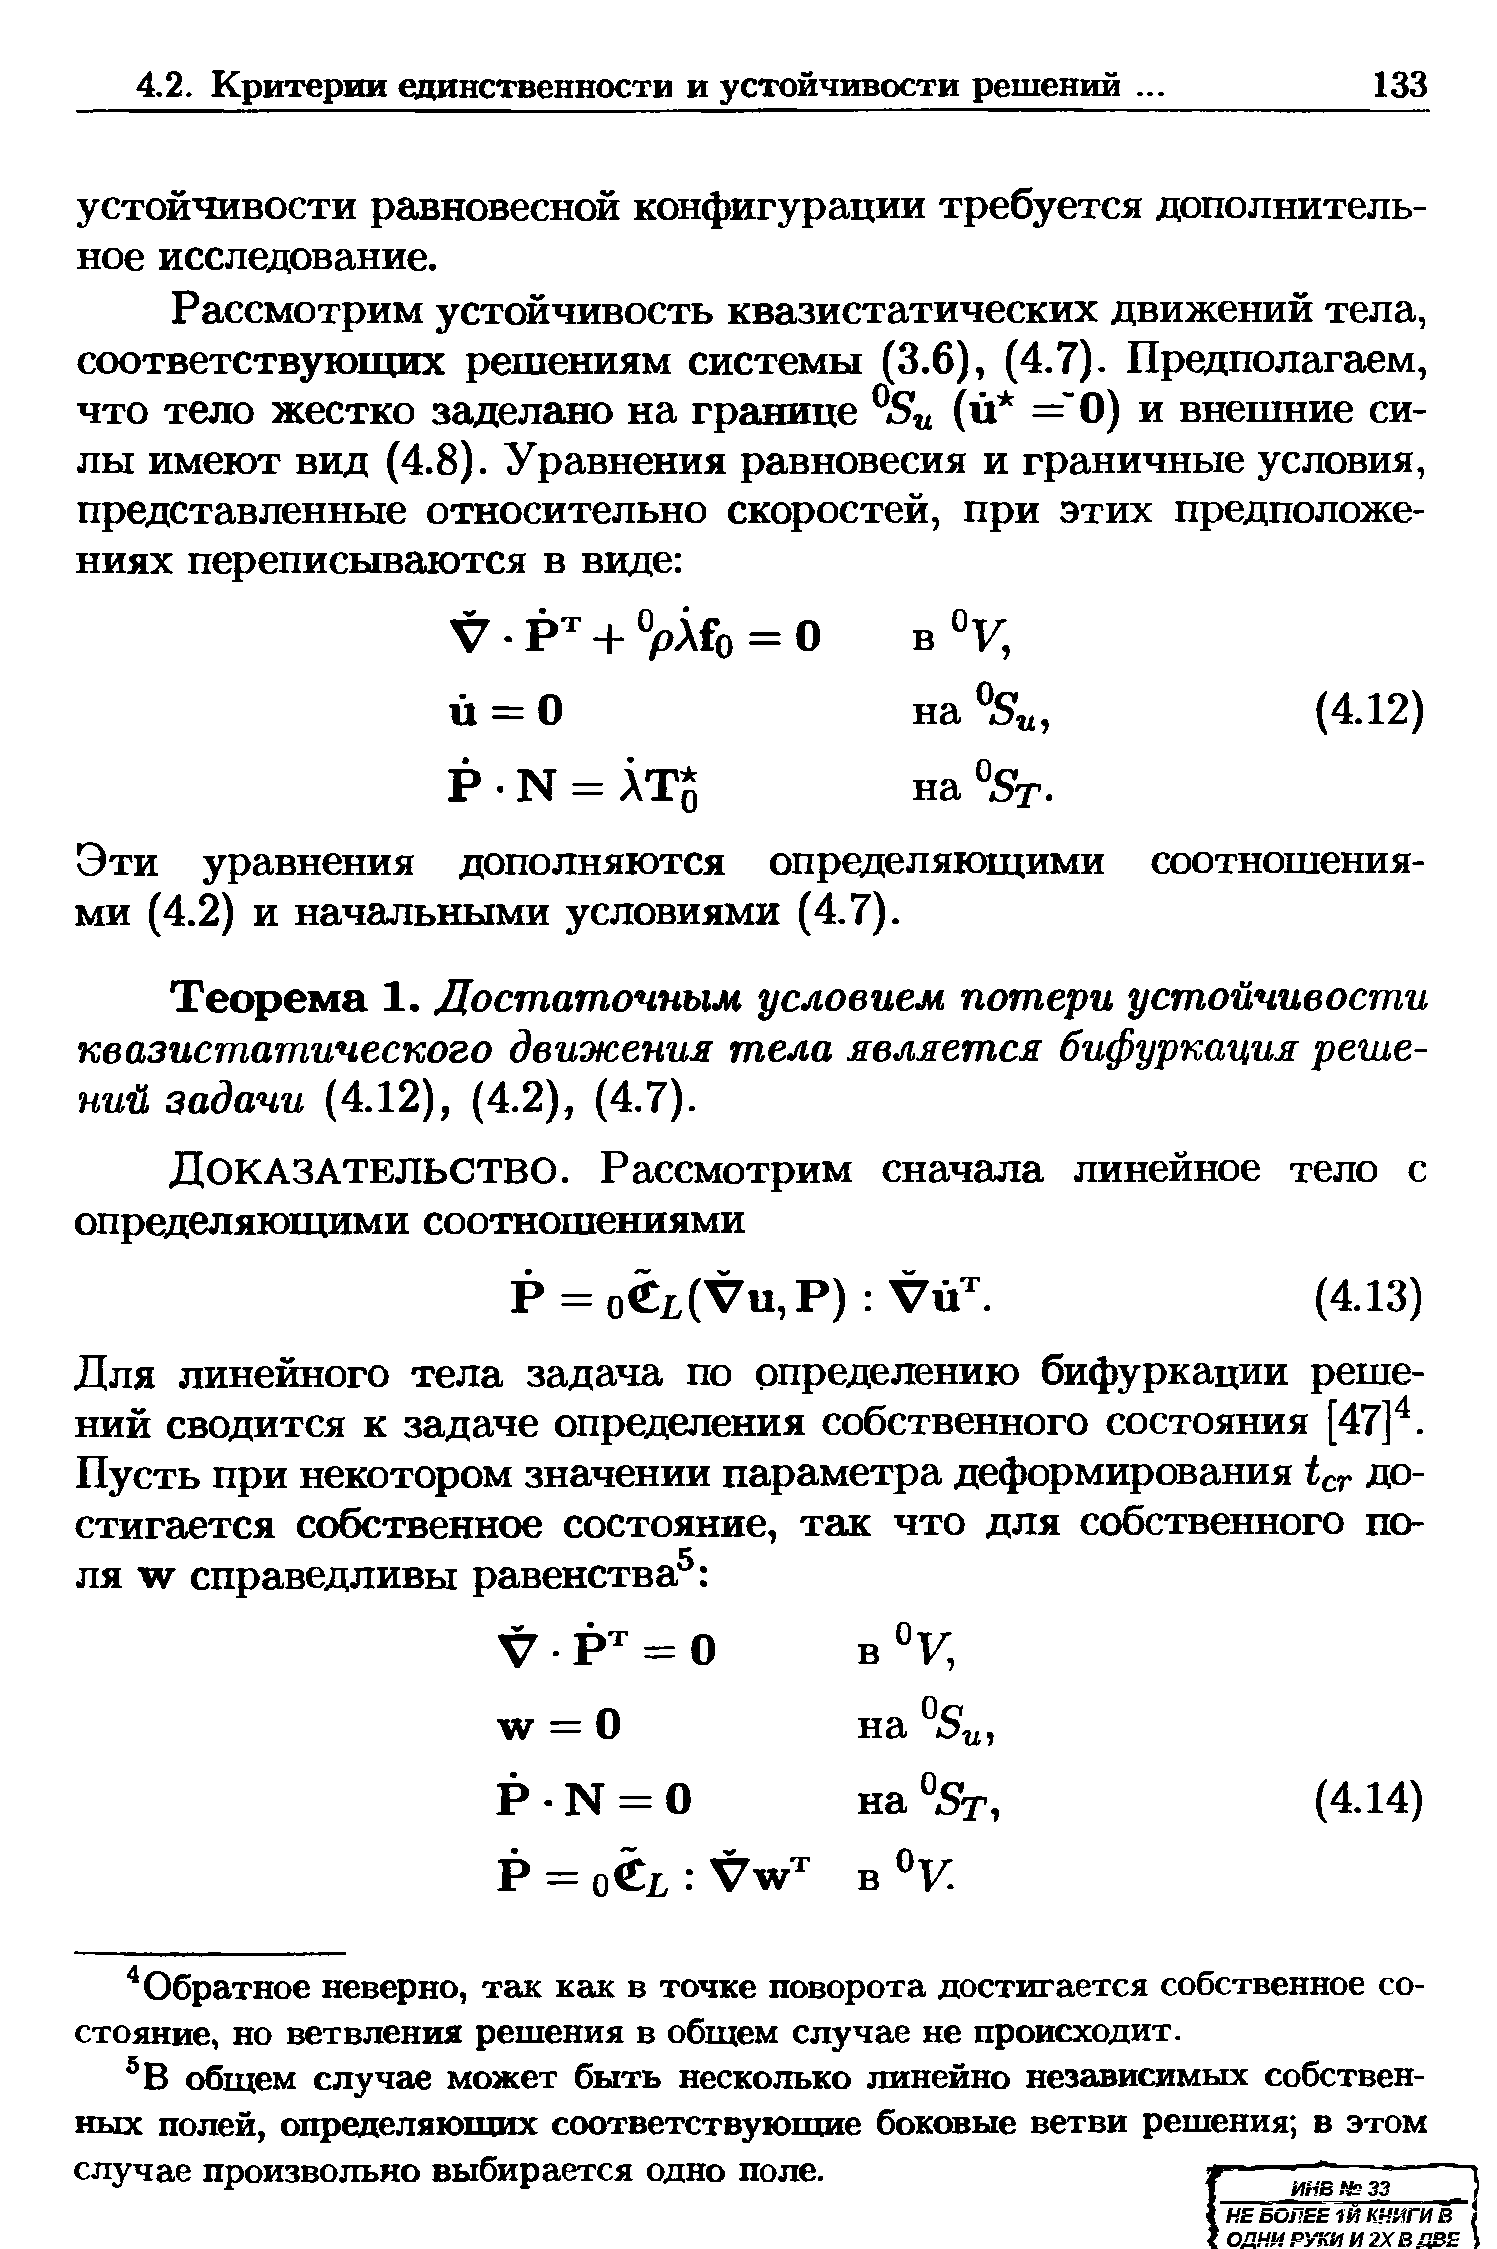 Эти уравнения дополняются определяющими соотношениями (4.2) и начальными условиями (4.7).
